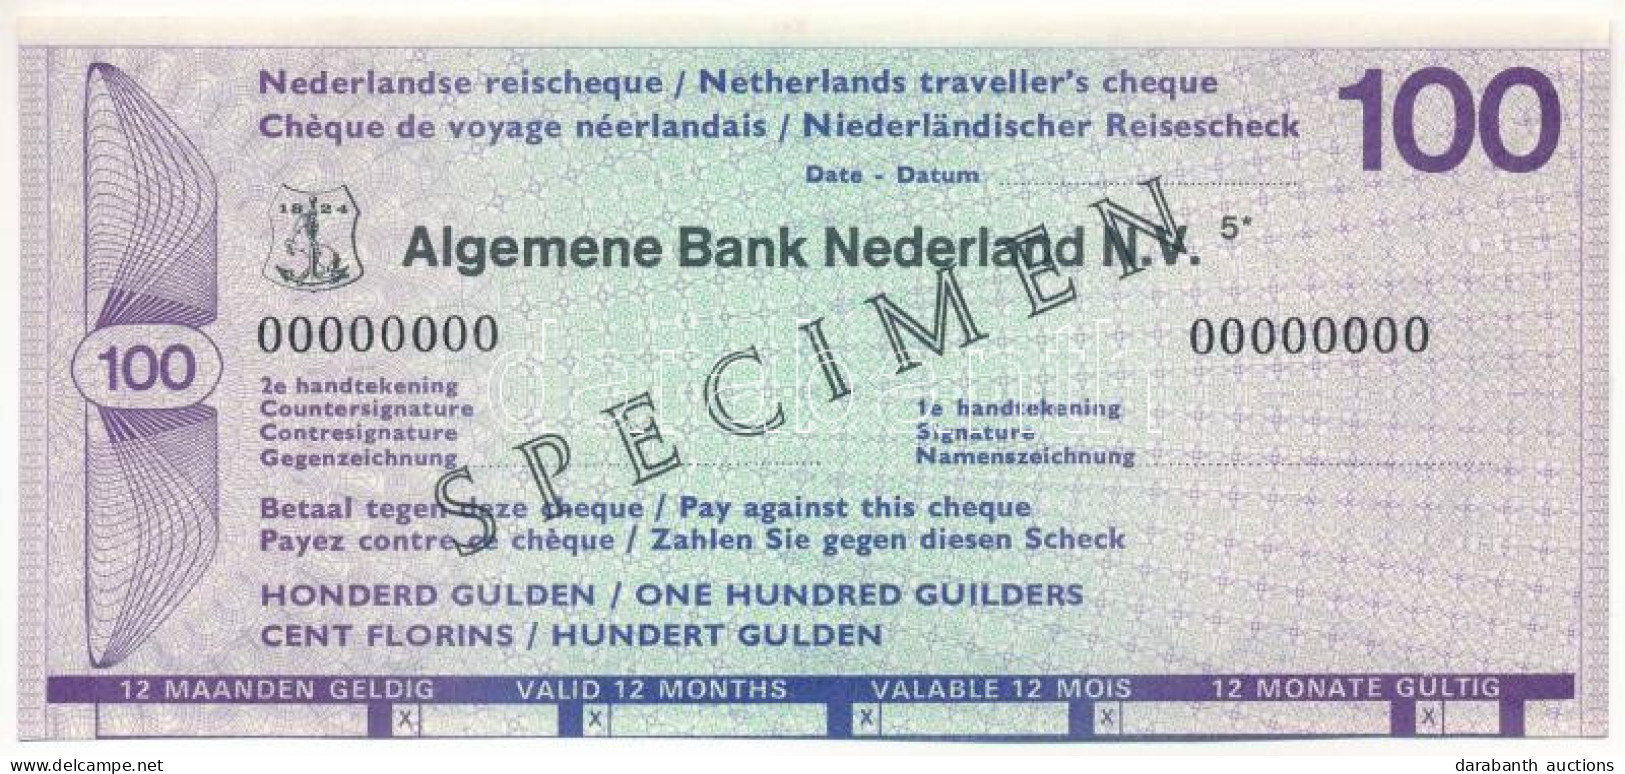 Hollandia DN "Általános Holland Bank" 100G "SPECIMEN" Utazási Csekk T:AU Jobb Szélen Hátoldalt Ragasztónyom  Netherlands - Non Classés